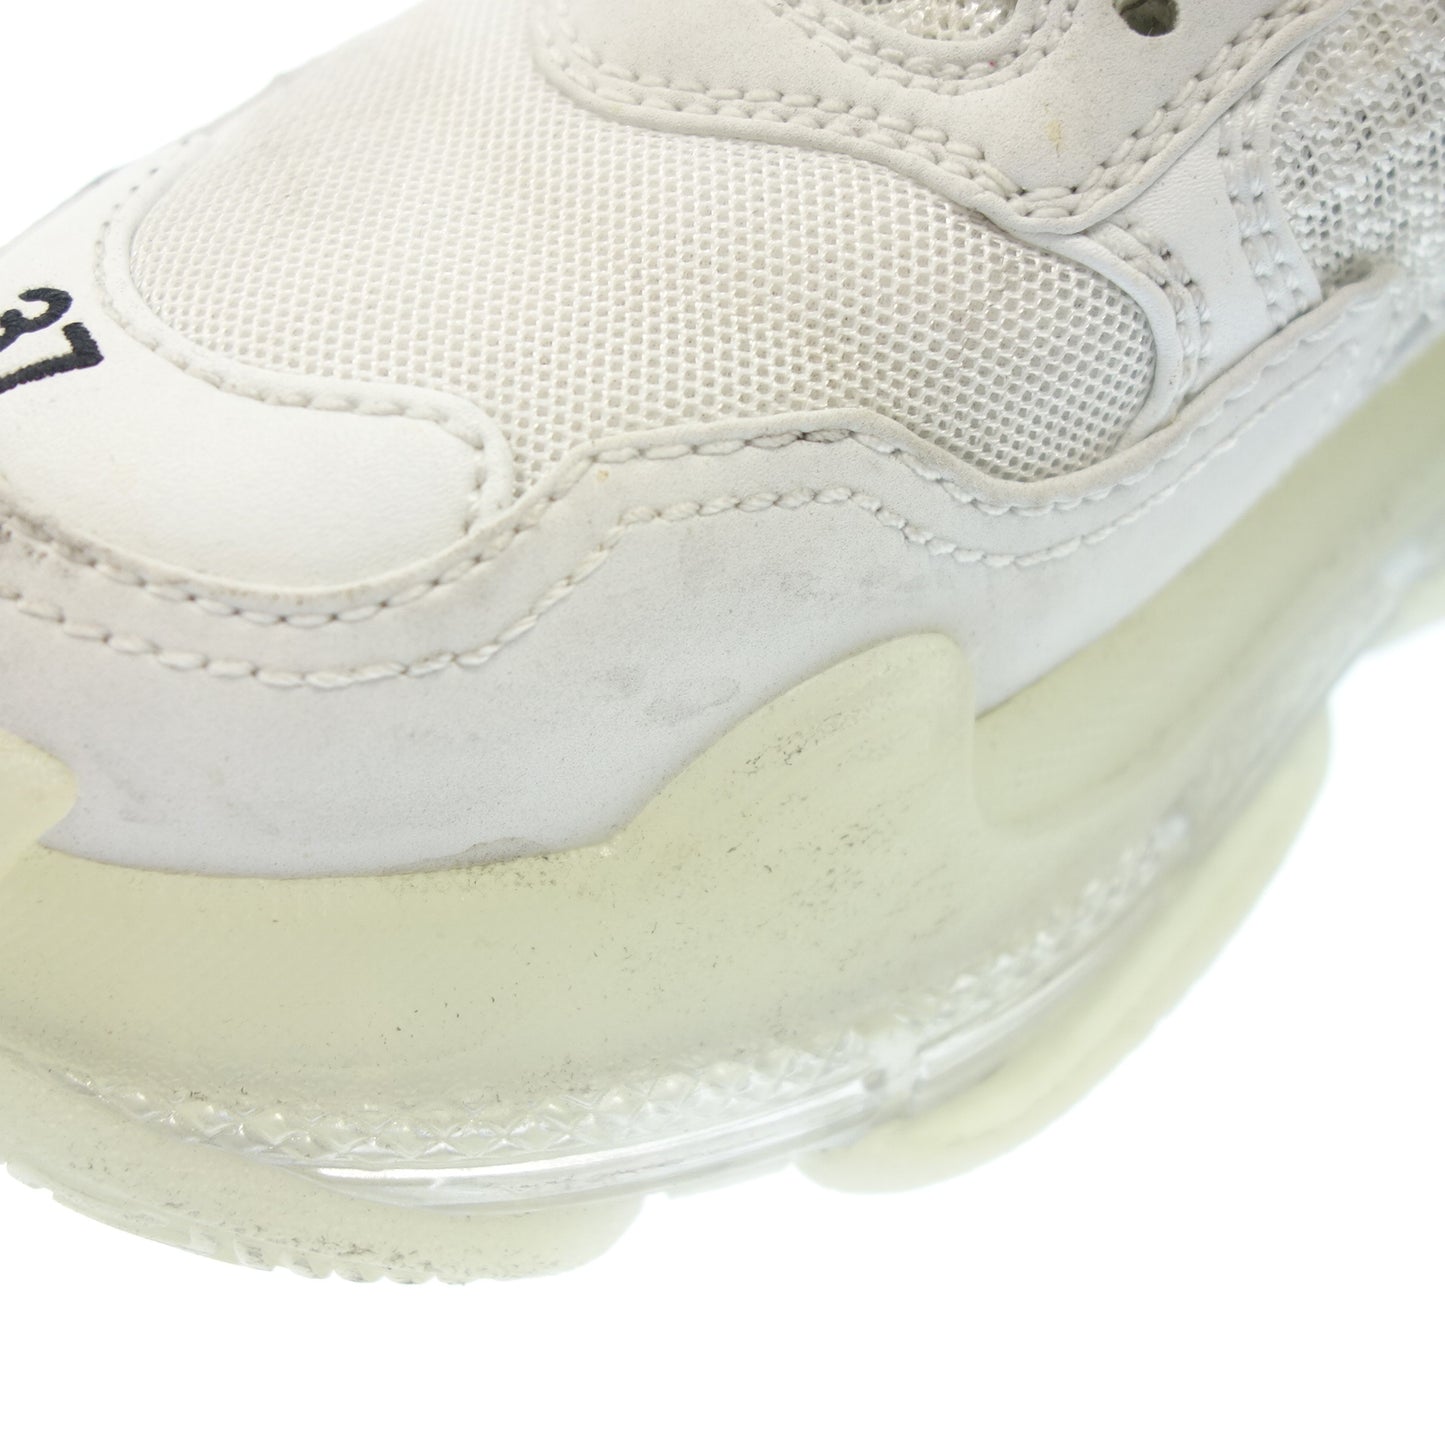 状况良好 ◆ Balenciaga 系带运动鞋网眼 Triple S 男士白色尺寸 24.5 厘米 BALENCIAGA [AFC27] 